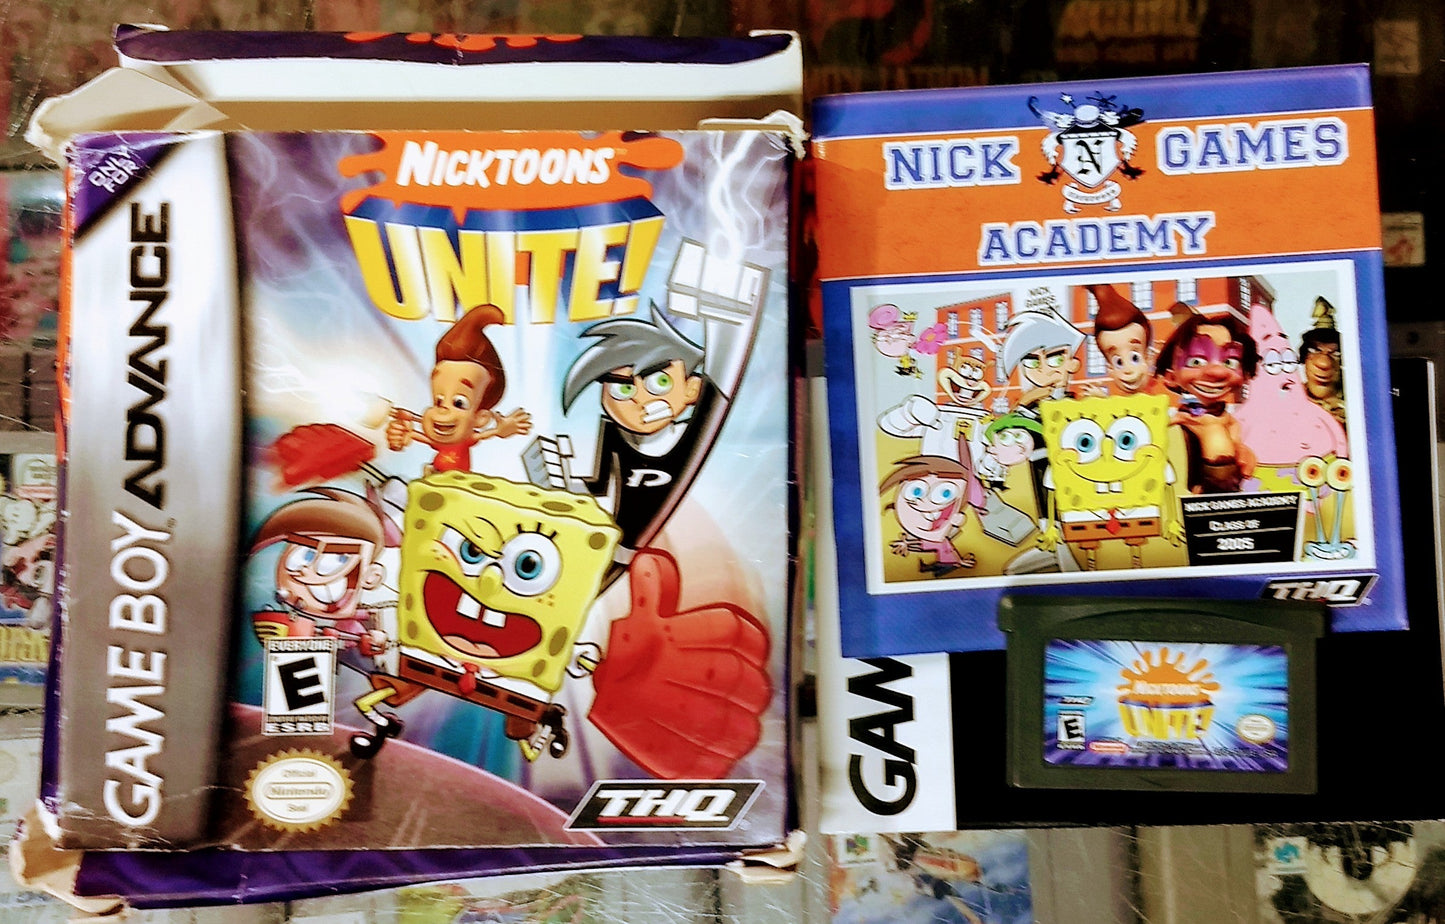 NICKTOONS UNITE EN BOITE (GAME BOY ADVANCE GBA) - jeux video game-x